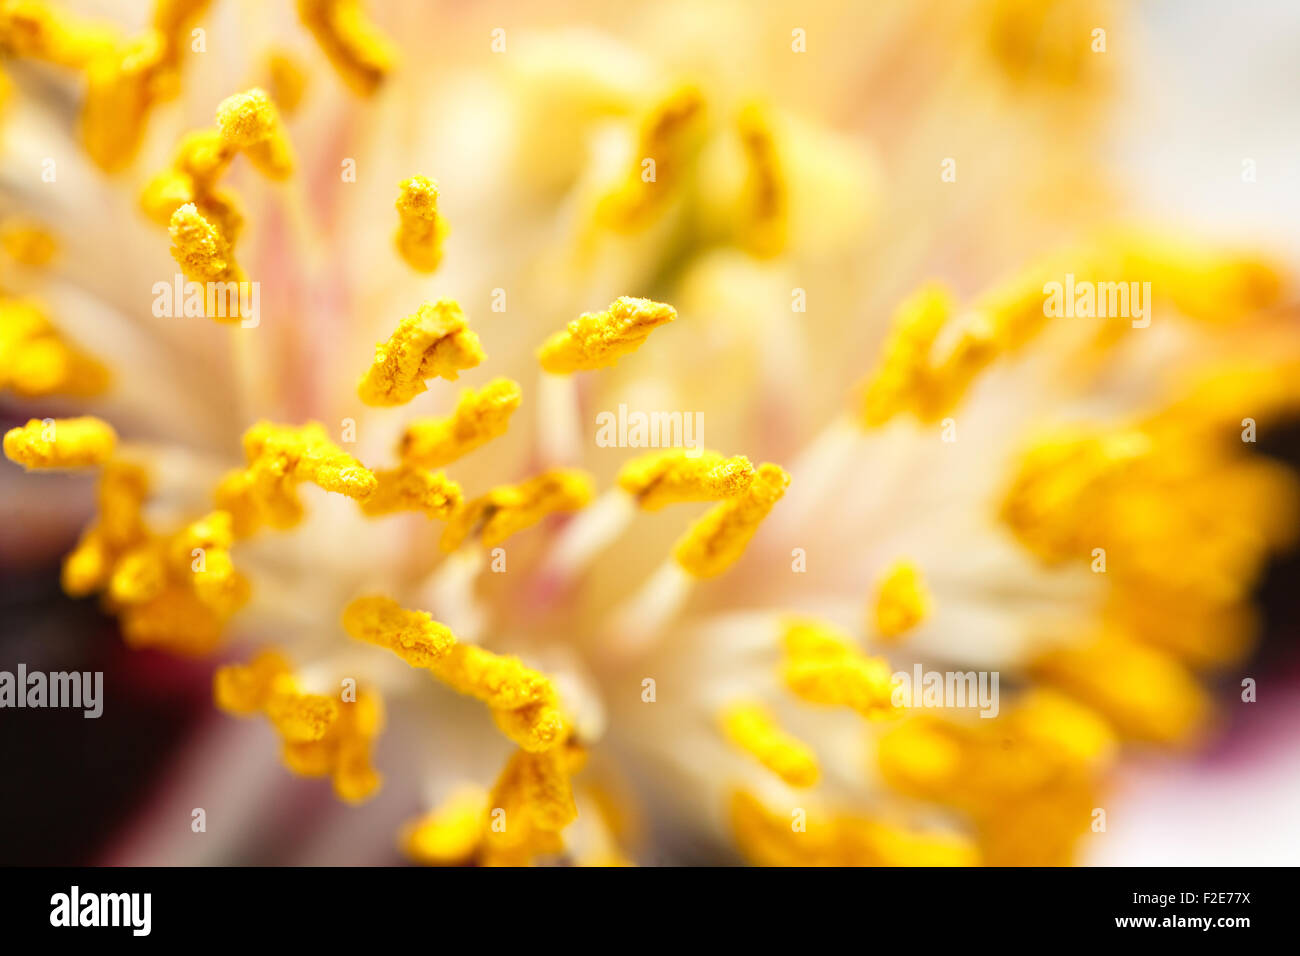 Flower yellow stamens macro Stock Photo